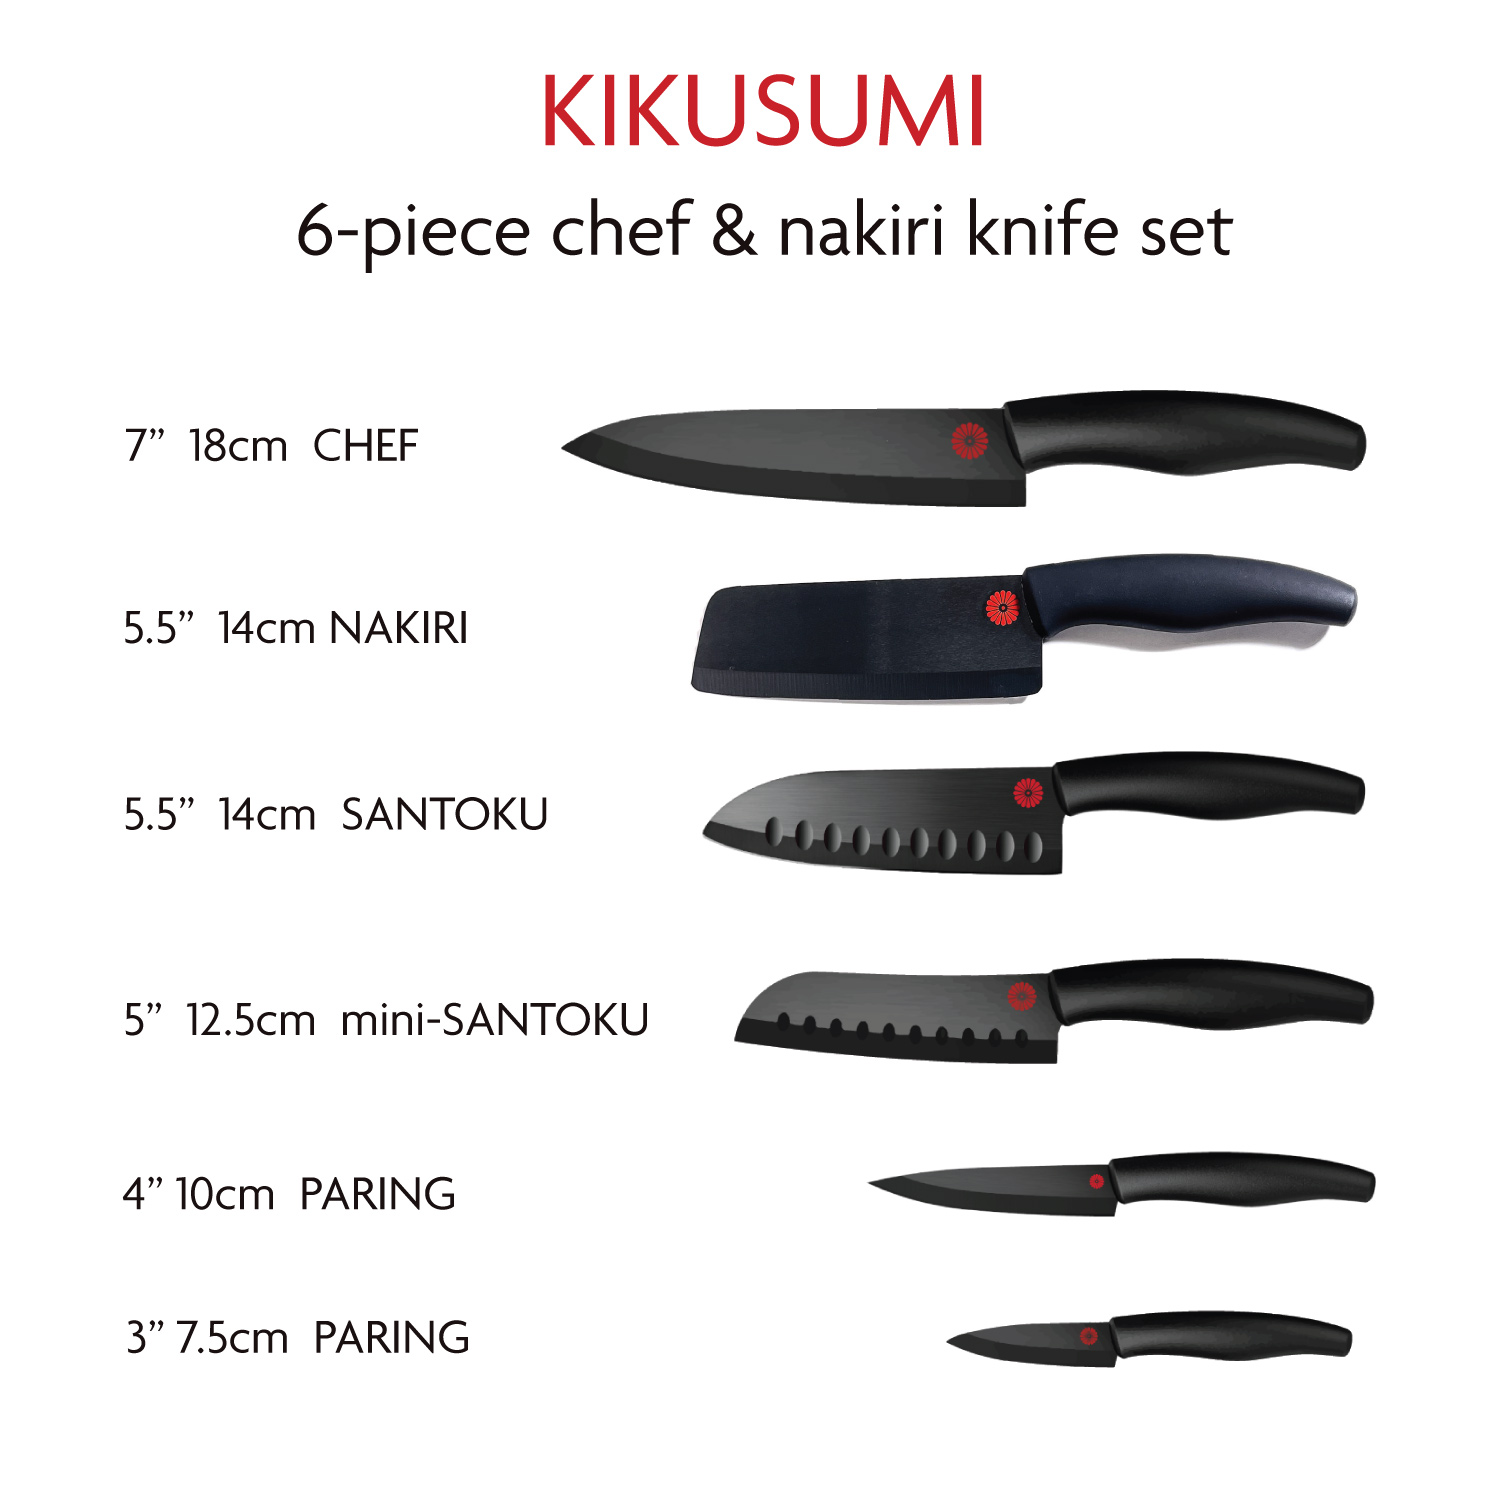 PW Ceramic Knives